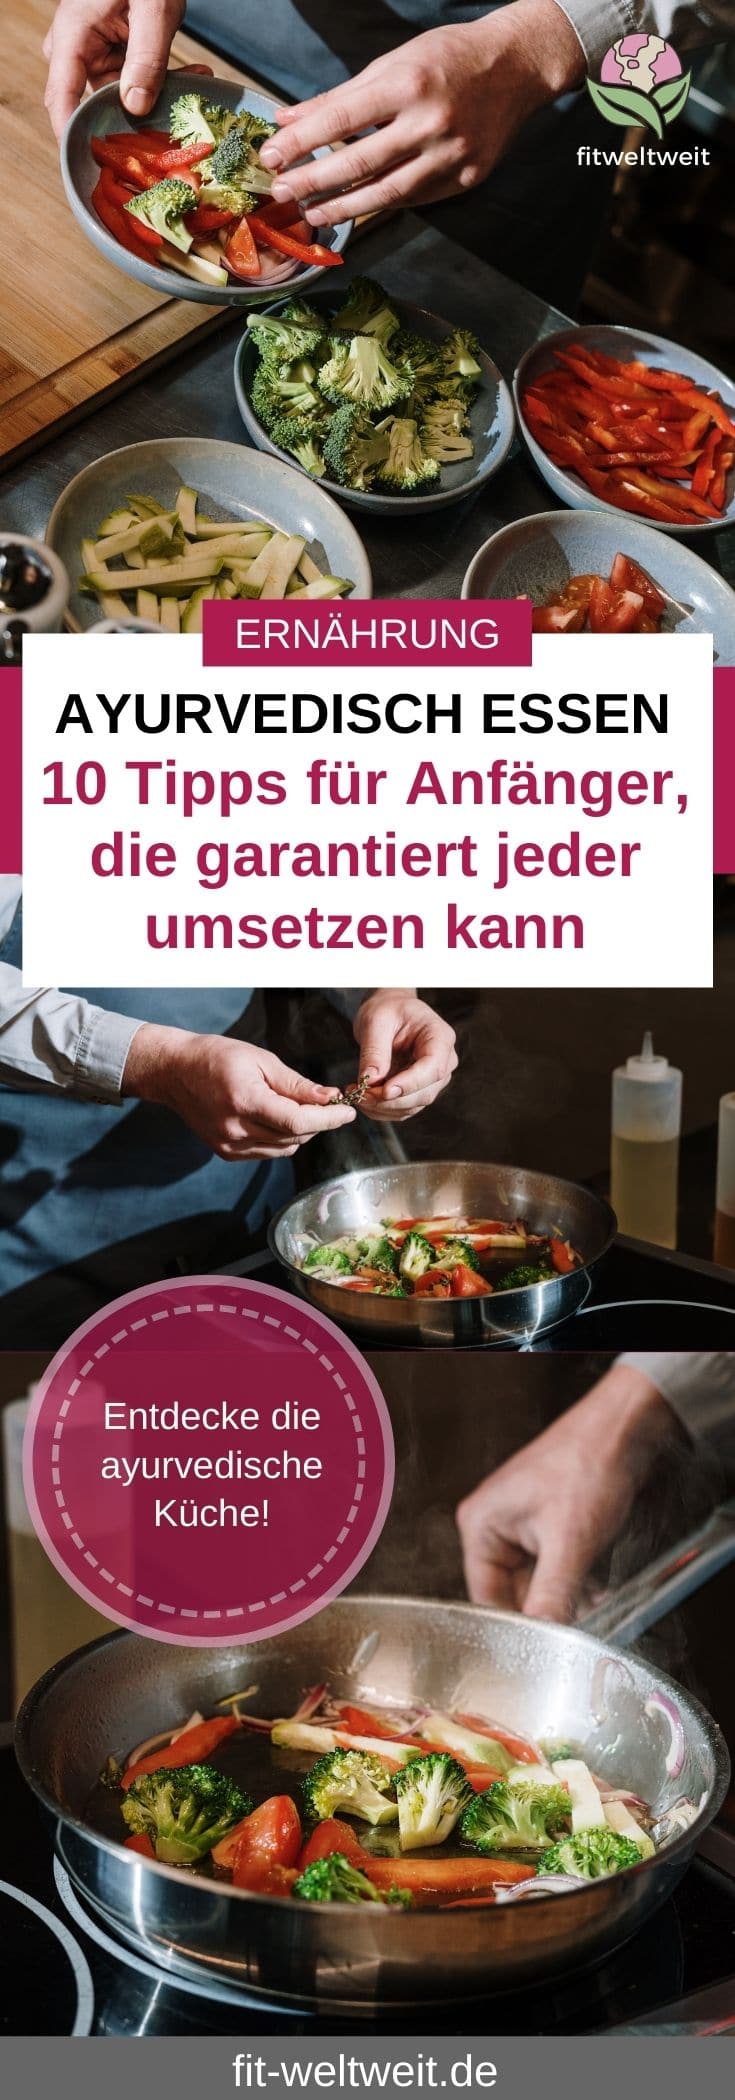 AYURVEDA FÜR ANFÄNGER 10 Tipps zur ayurvedischen Ernährung Dosha Typen, Verdauung, Lebensmittel & Gewürze